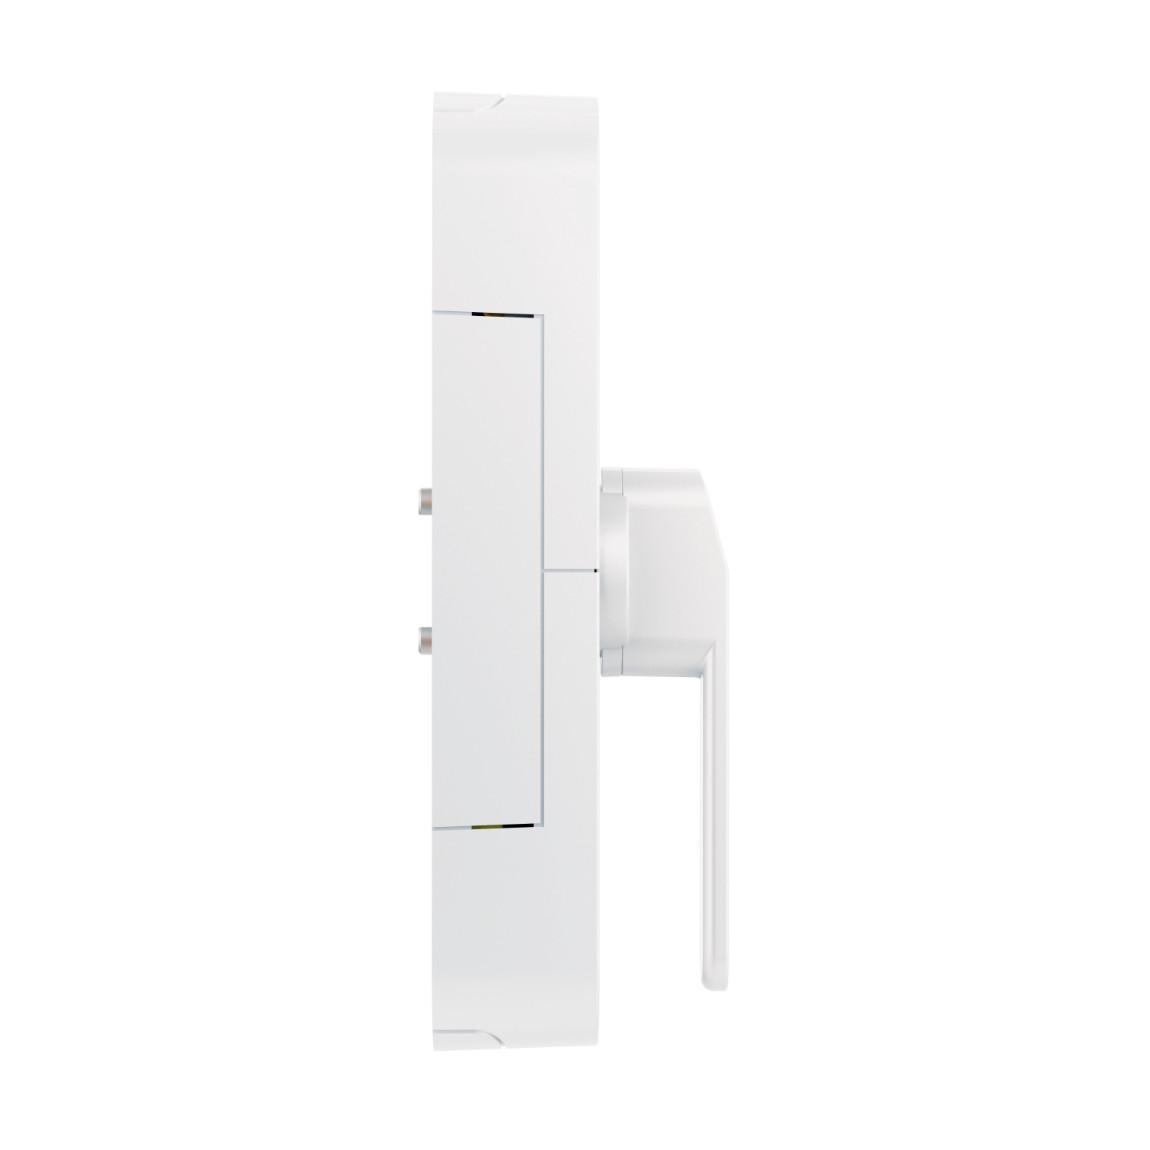 ABUS Wintecto One - Tür-/Fensterantrieb - Weiß